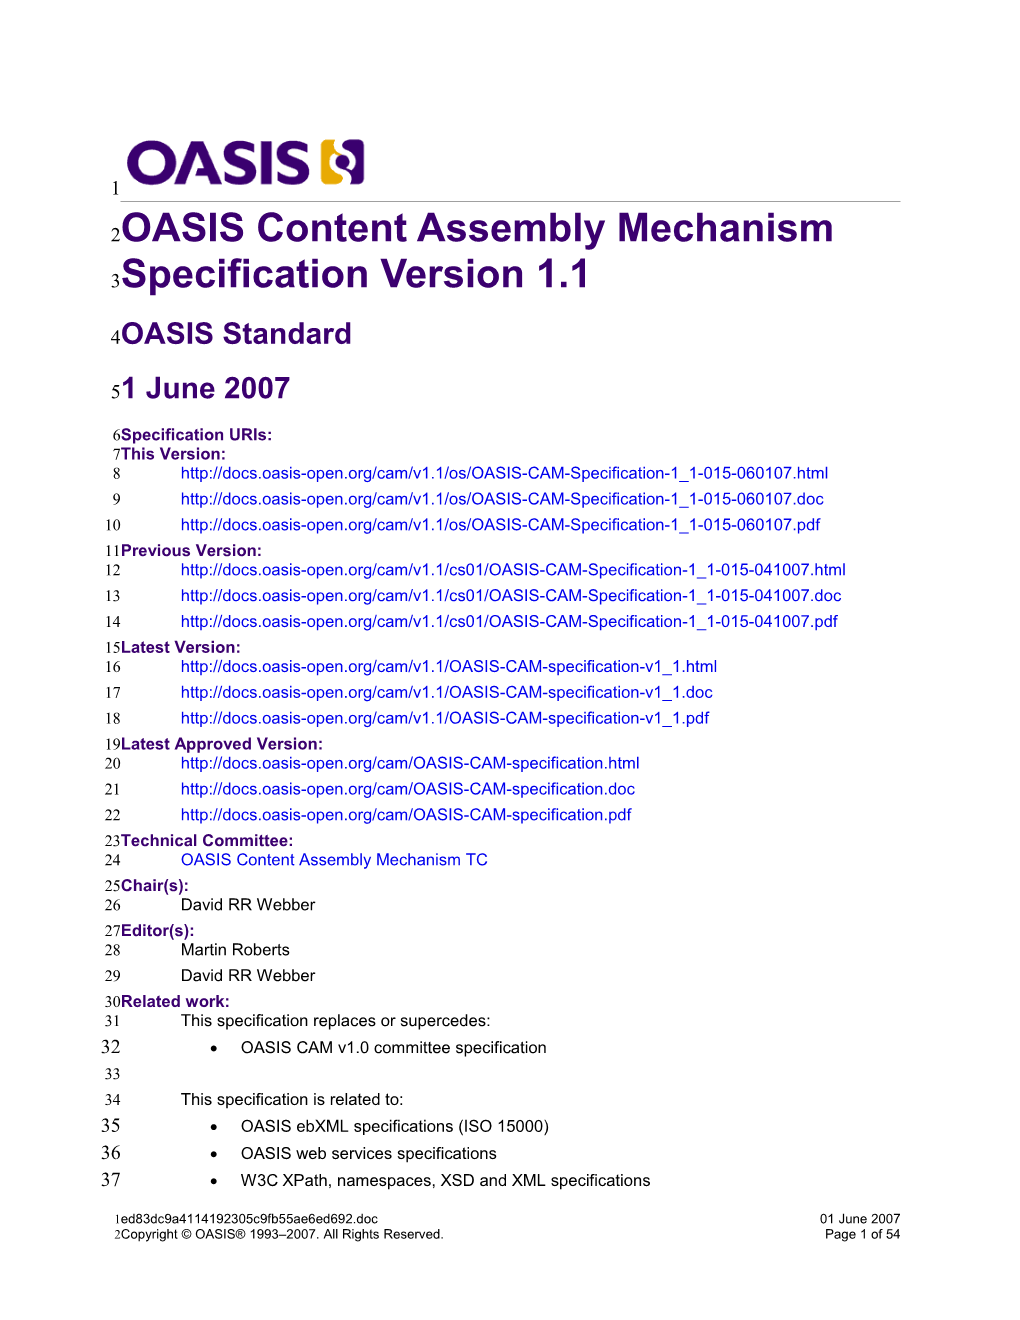 OASIS CAM V1.1 Specification